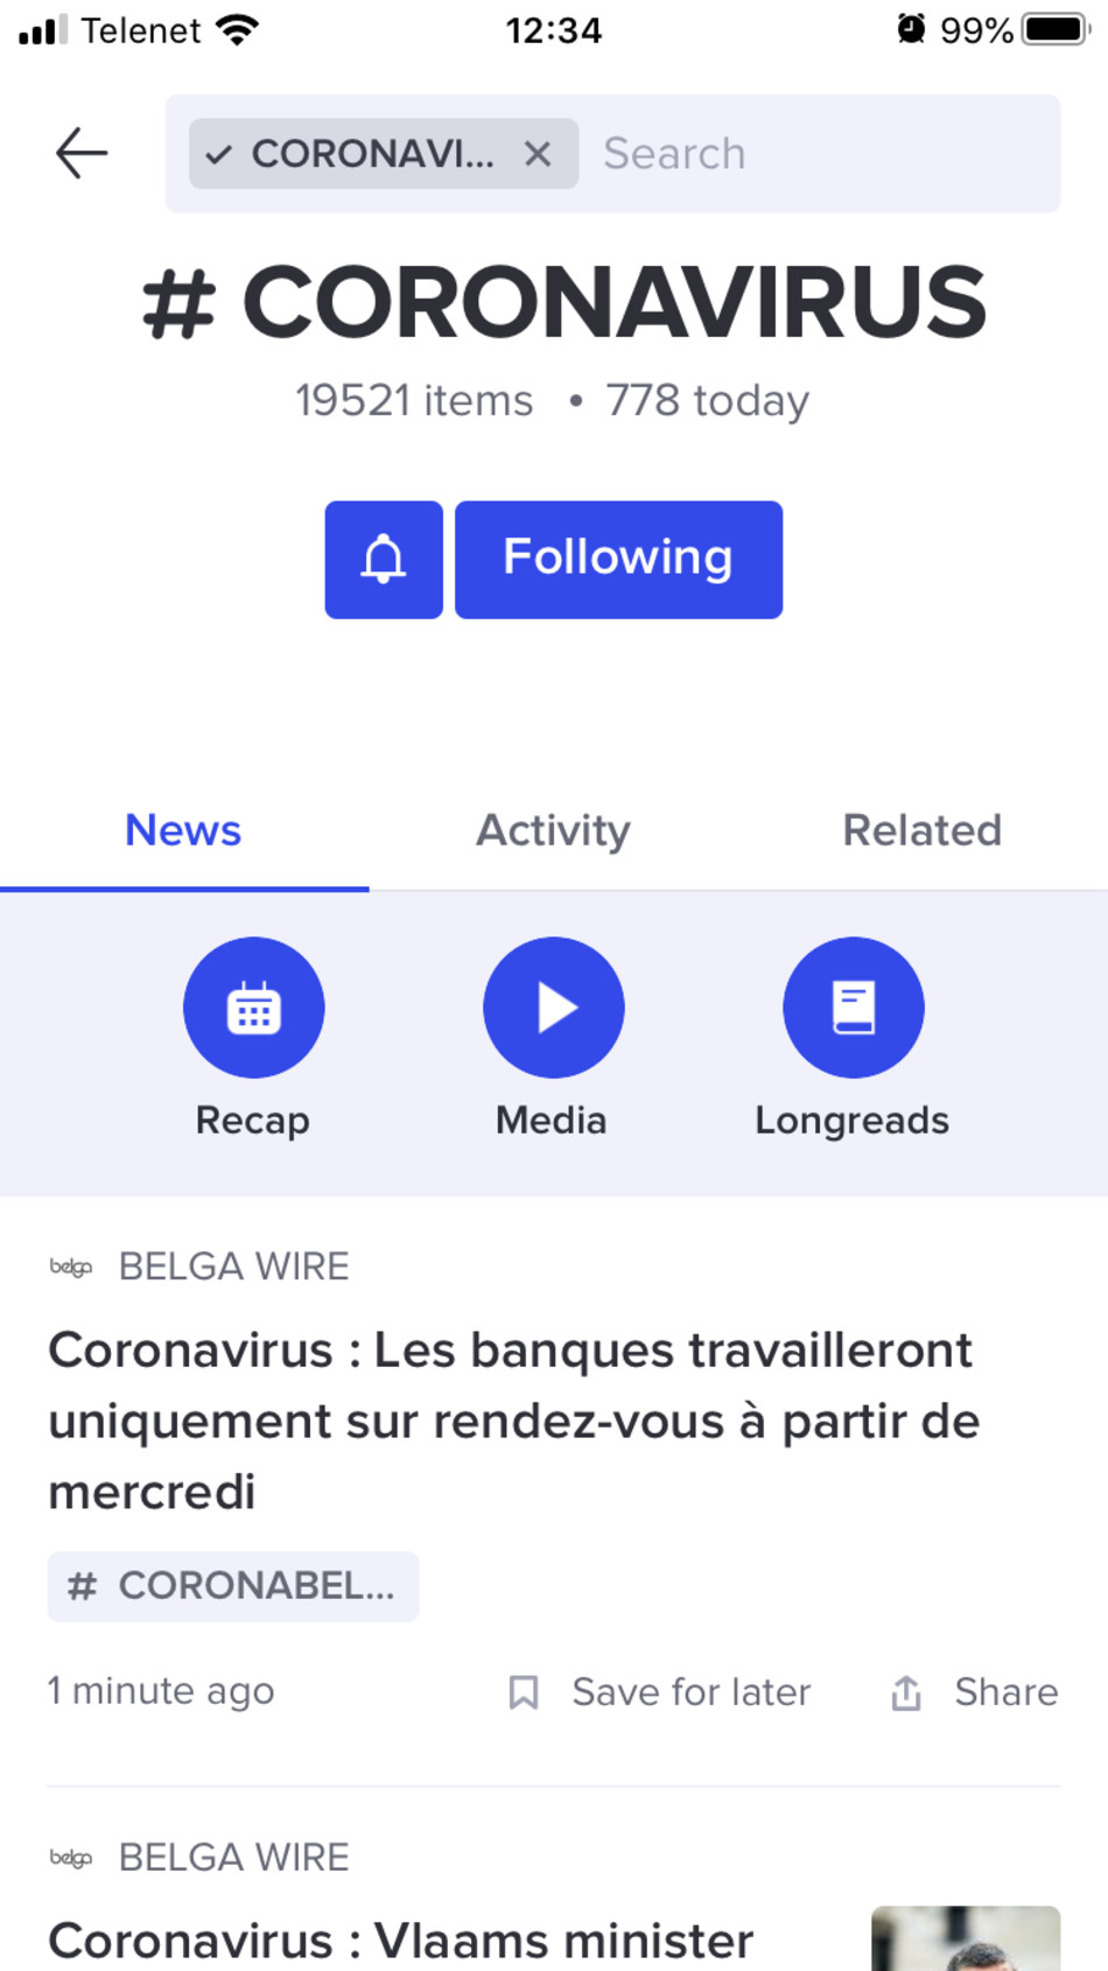 Diffusez gratuitement votre communication concernant le coronavirus à l'ensemble des médias belges